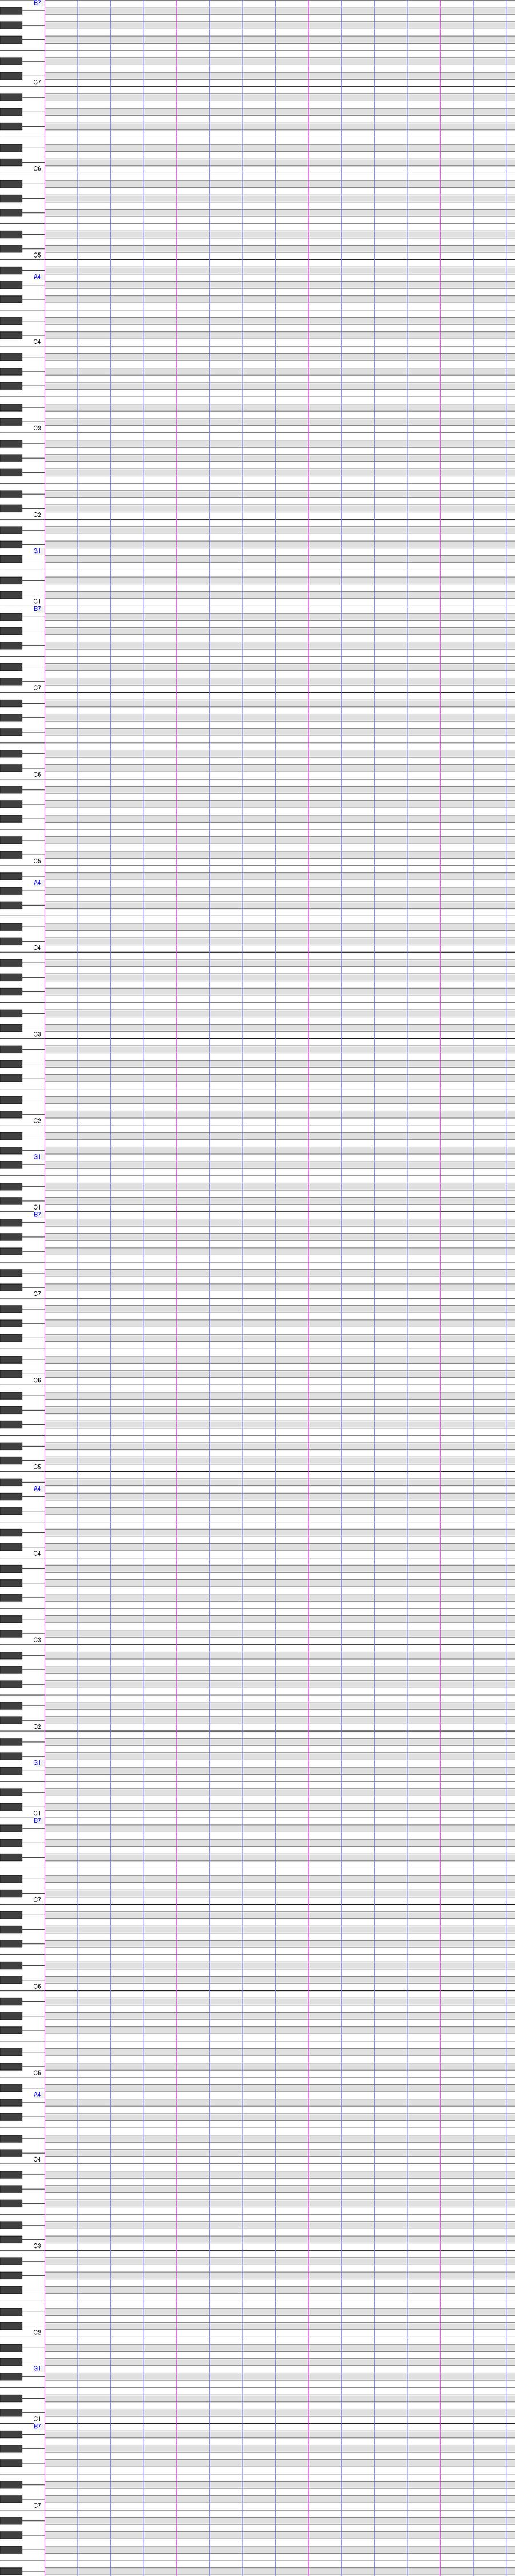 Custom Box Background Utau Piano Roll Regular By Prismoid On